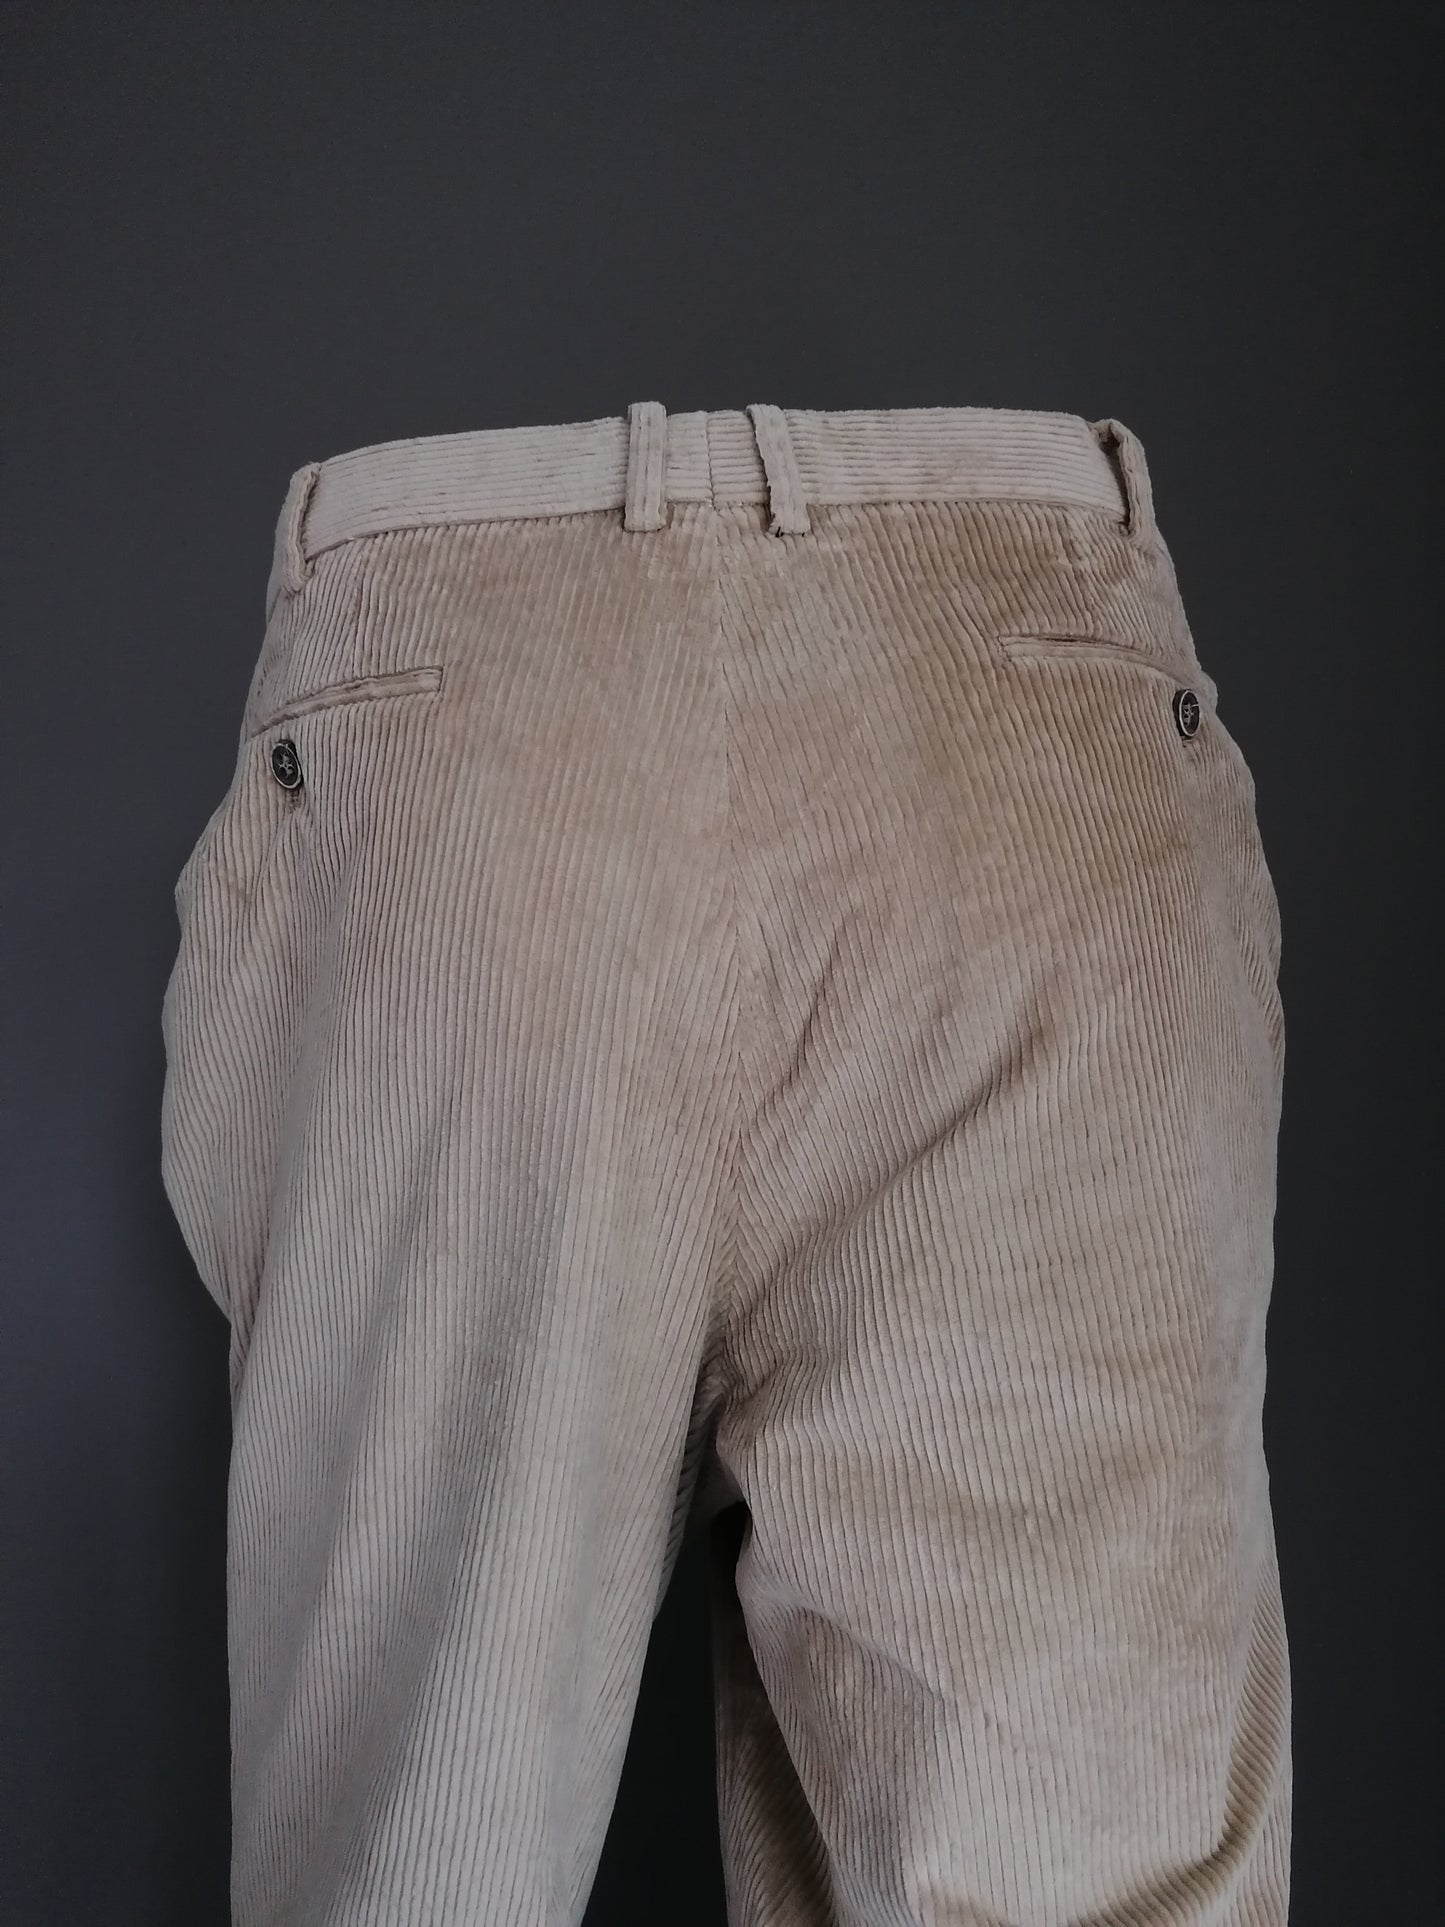 Pantaloni / pantaloni a costine Hiltl. Colorato marrone chiaro. Dimensioni 54 / l